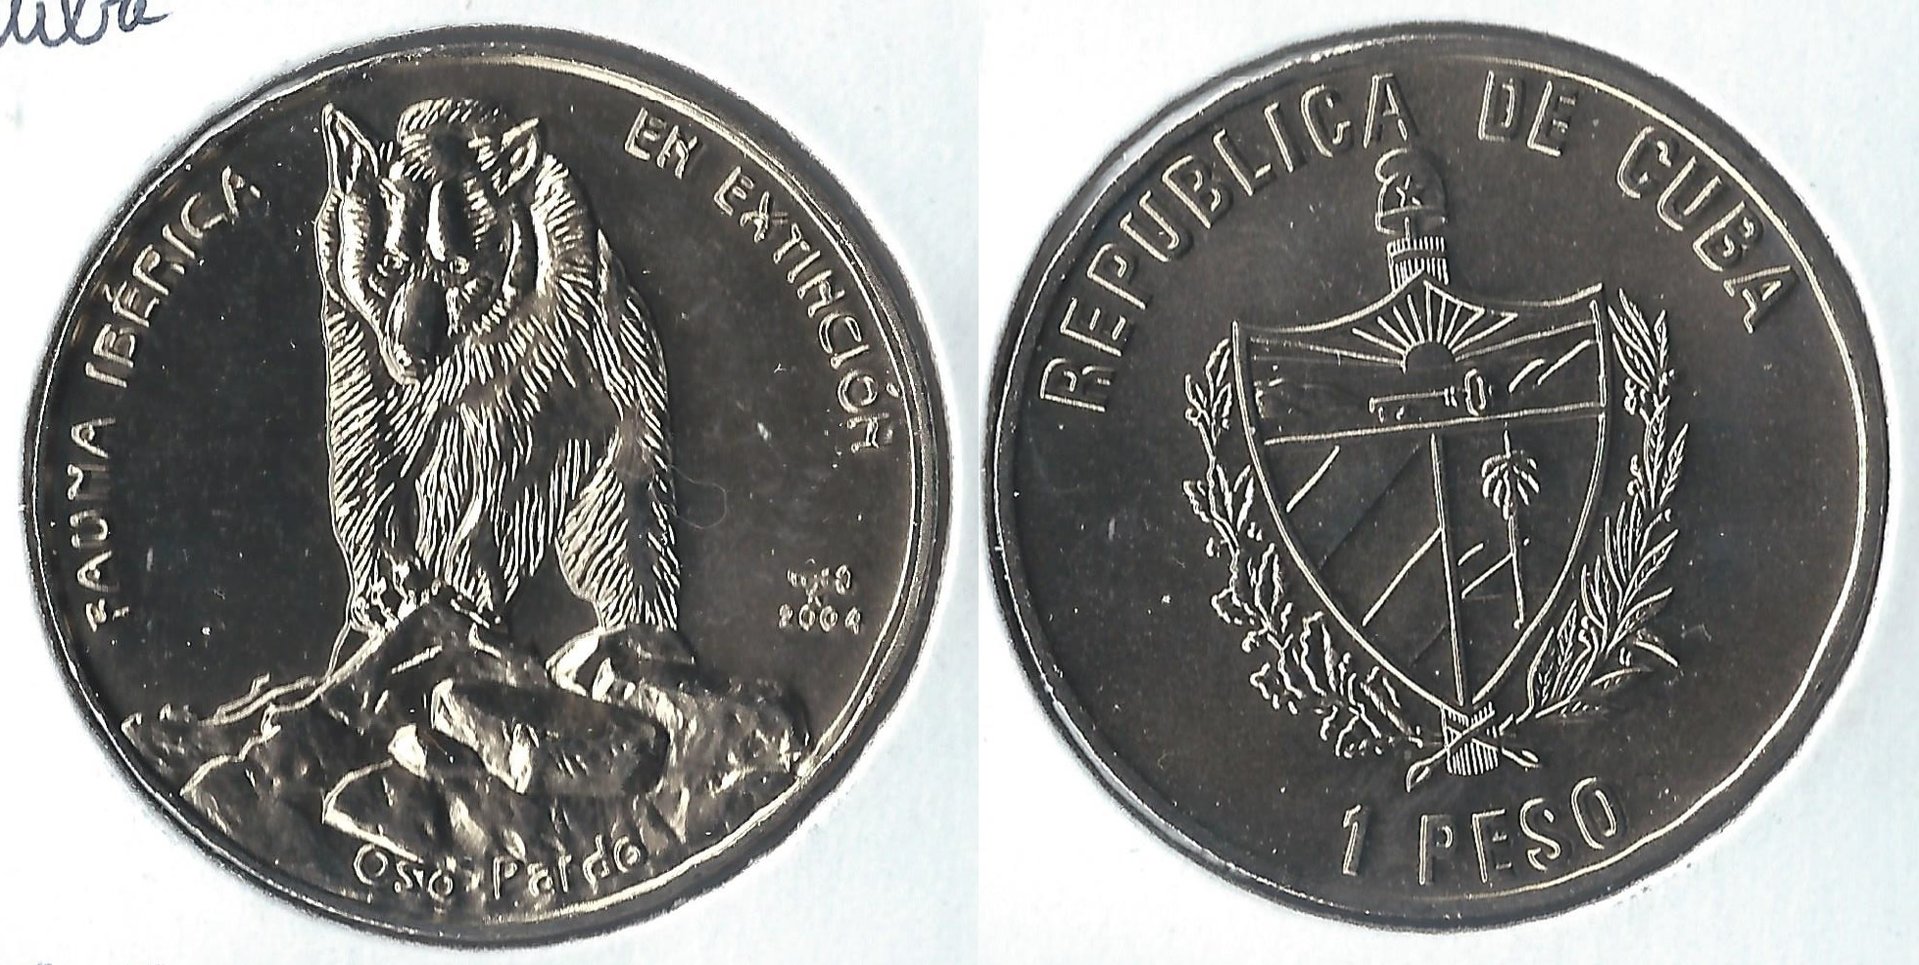 2004 cuba 1 peso.jpg